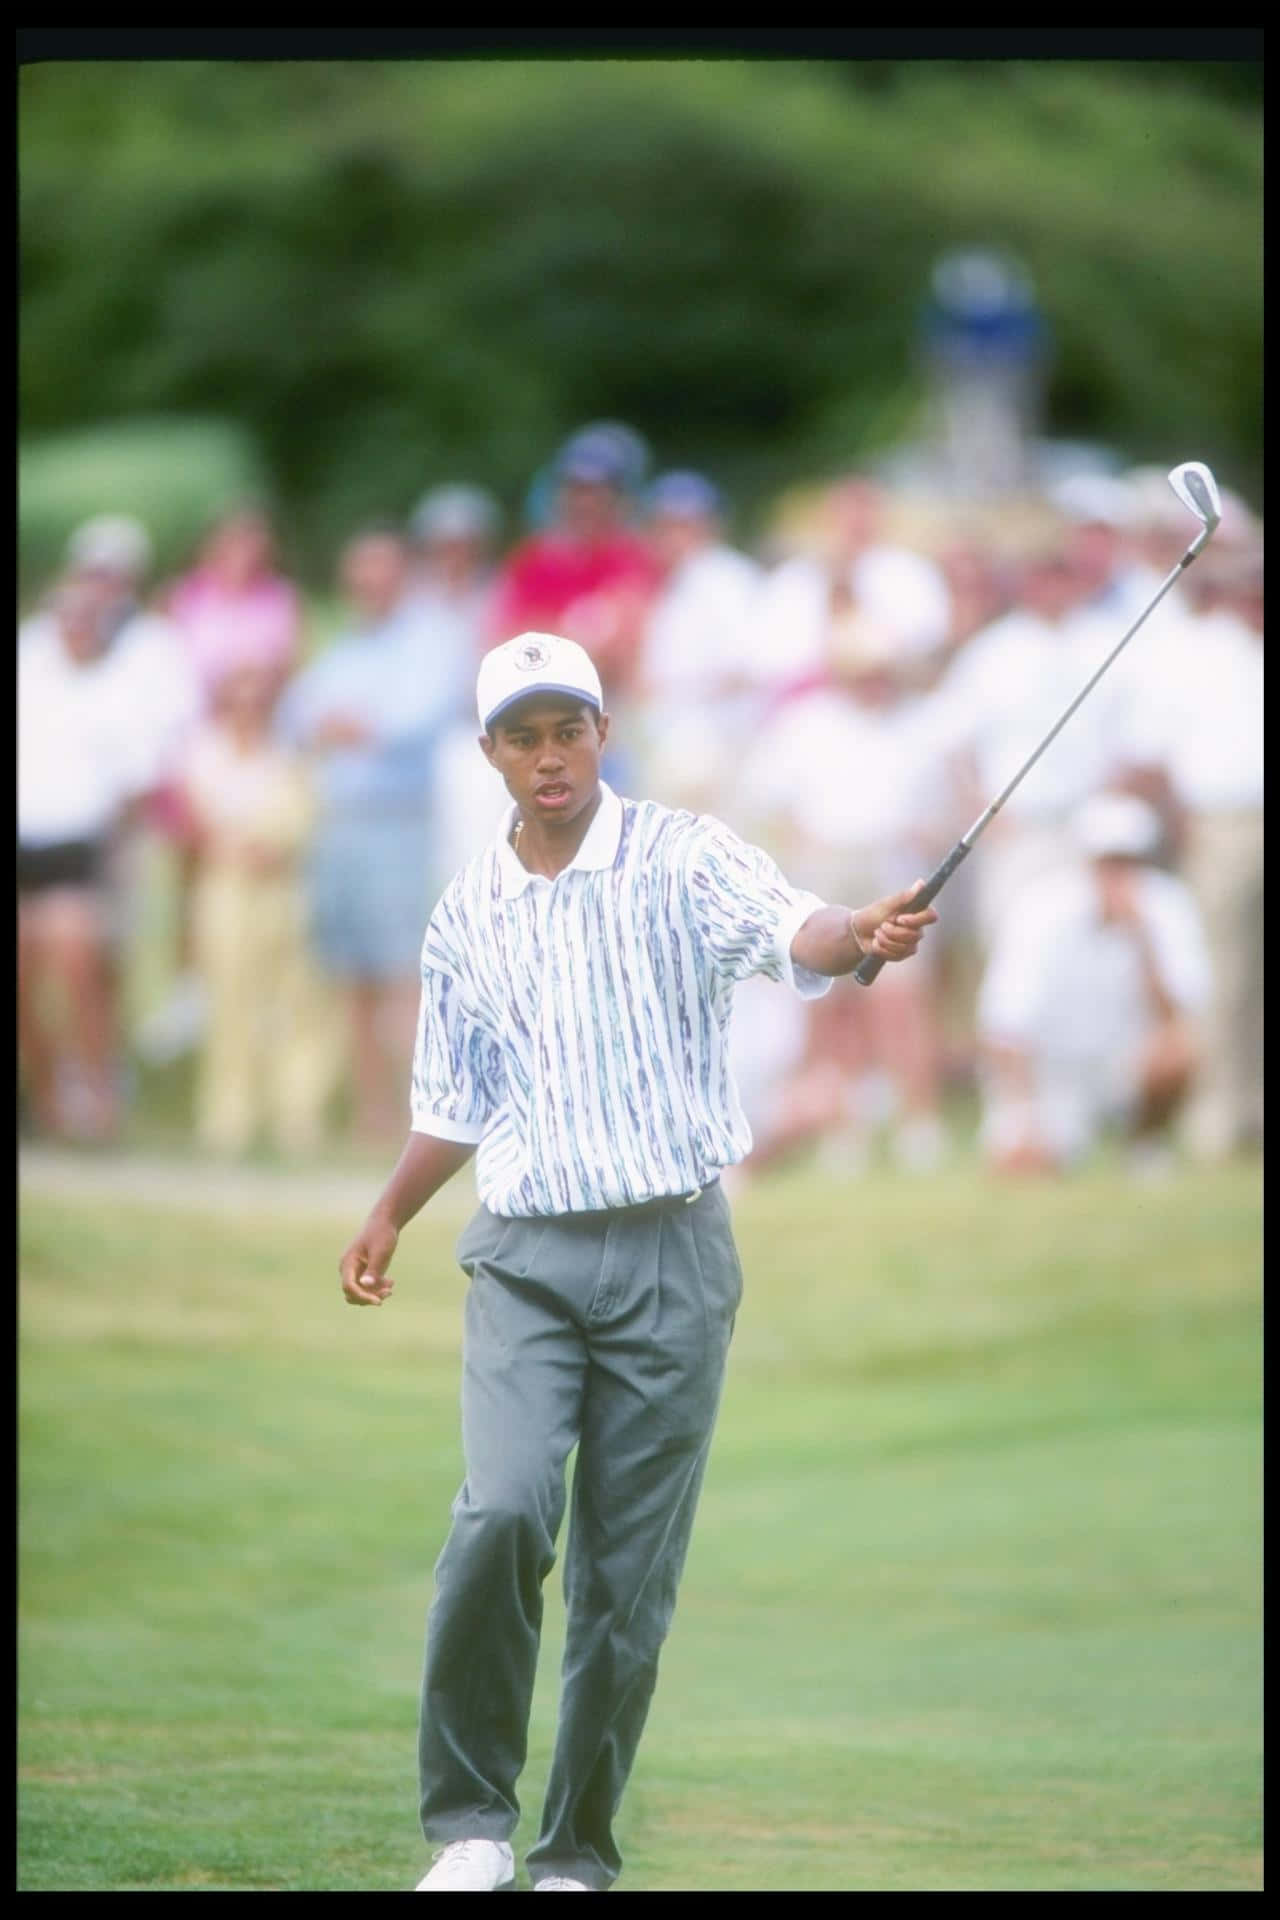 Fange op med golf legende Tiger Woods ved hjælp af iPhone's groovy tapet! Wallpaper